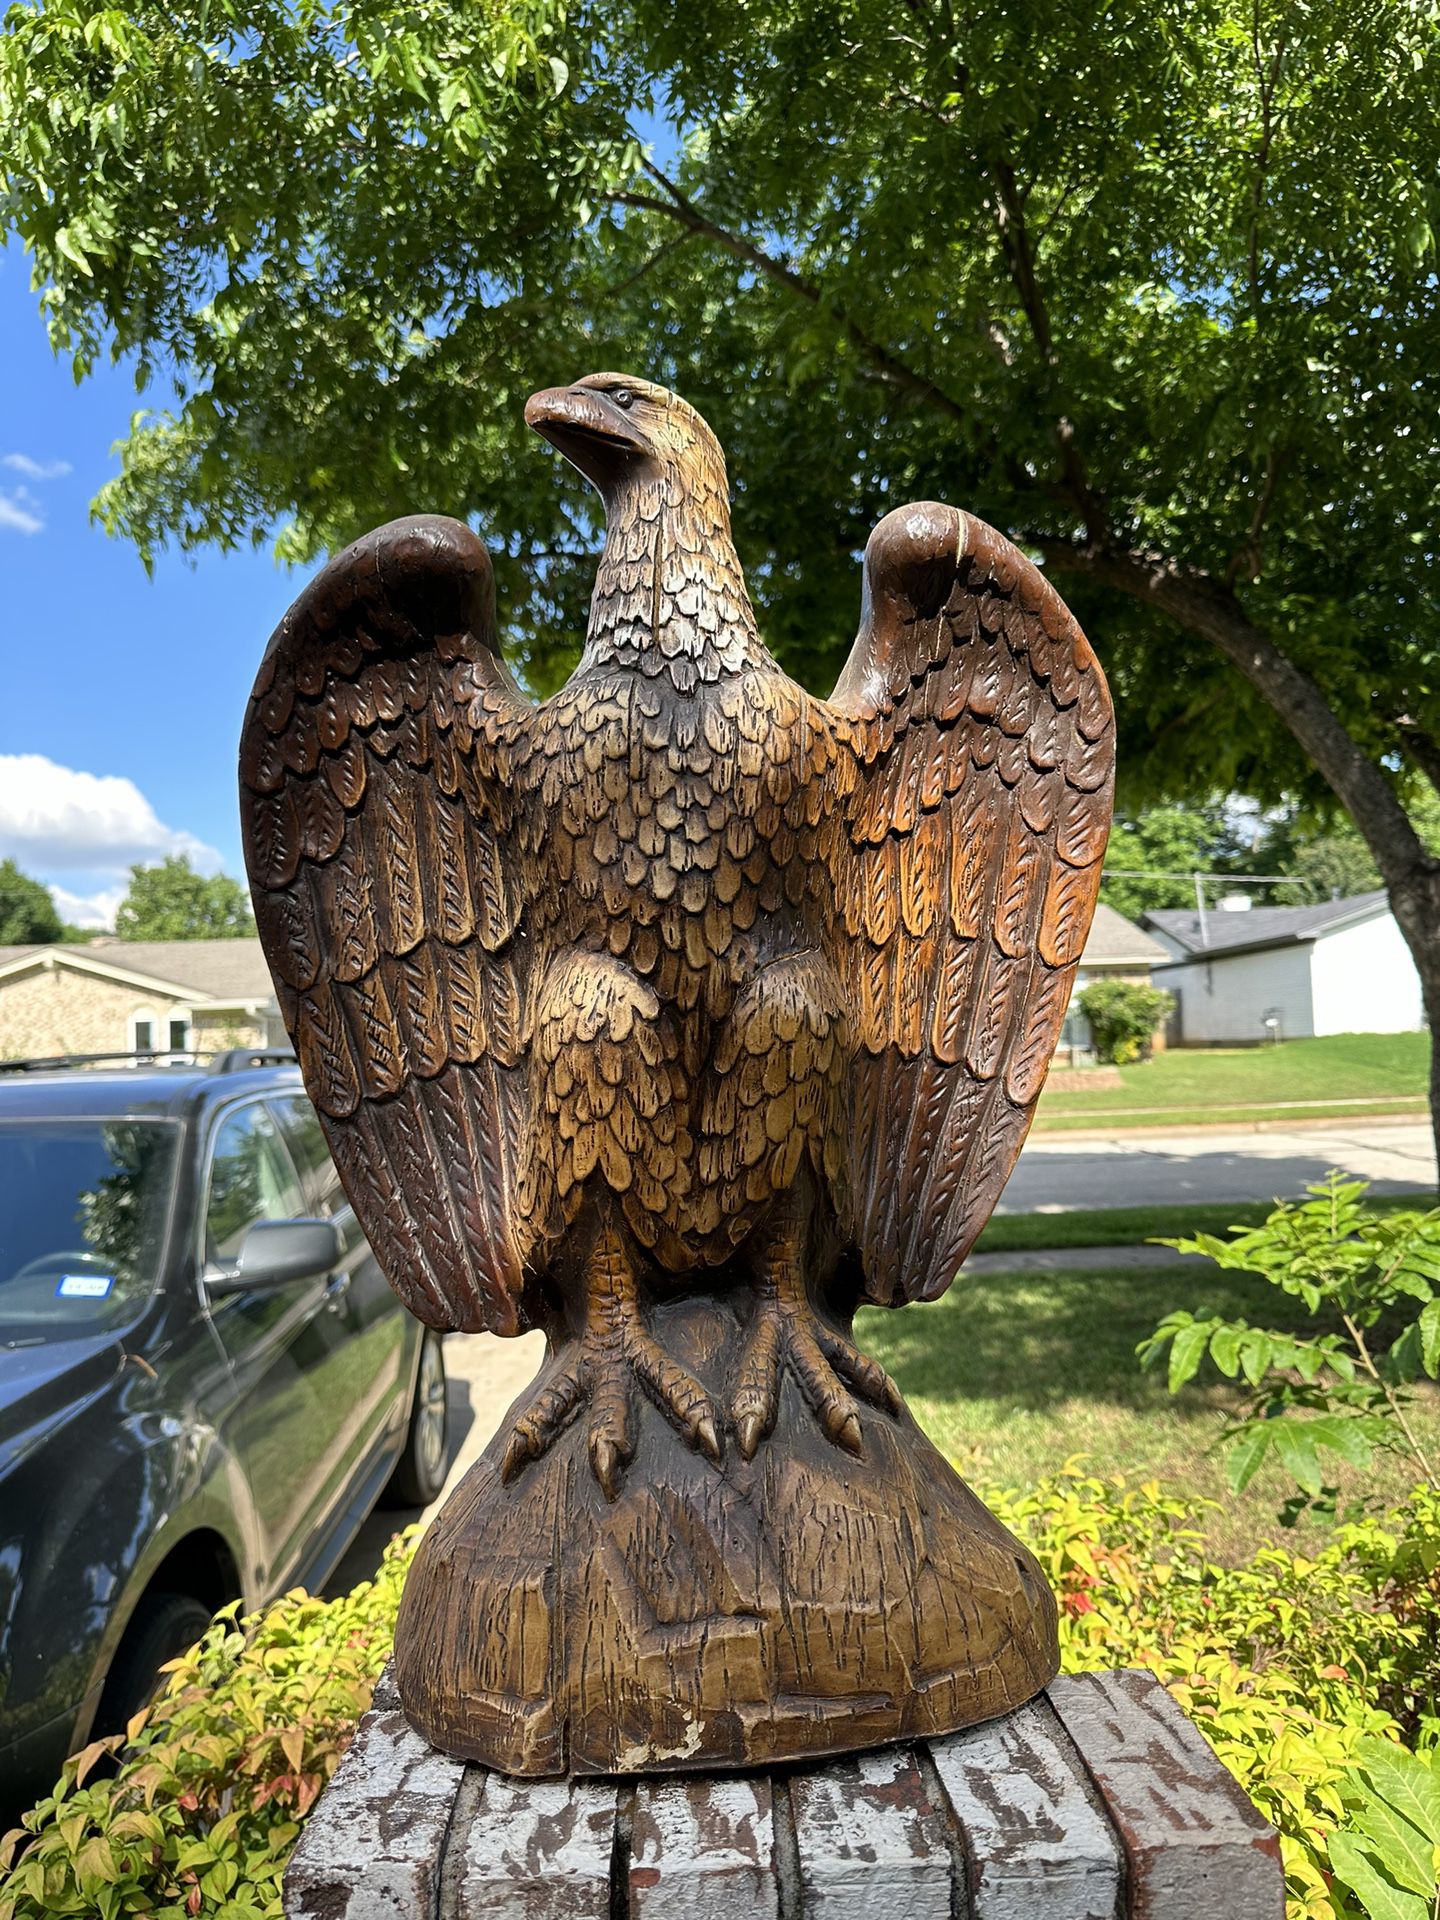 Bald Eagle Statue 